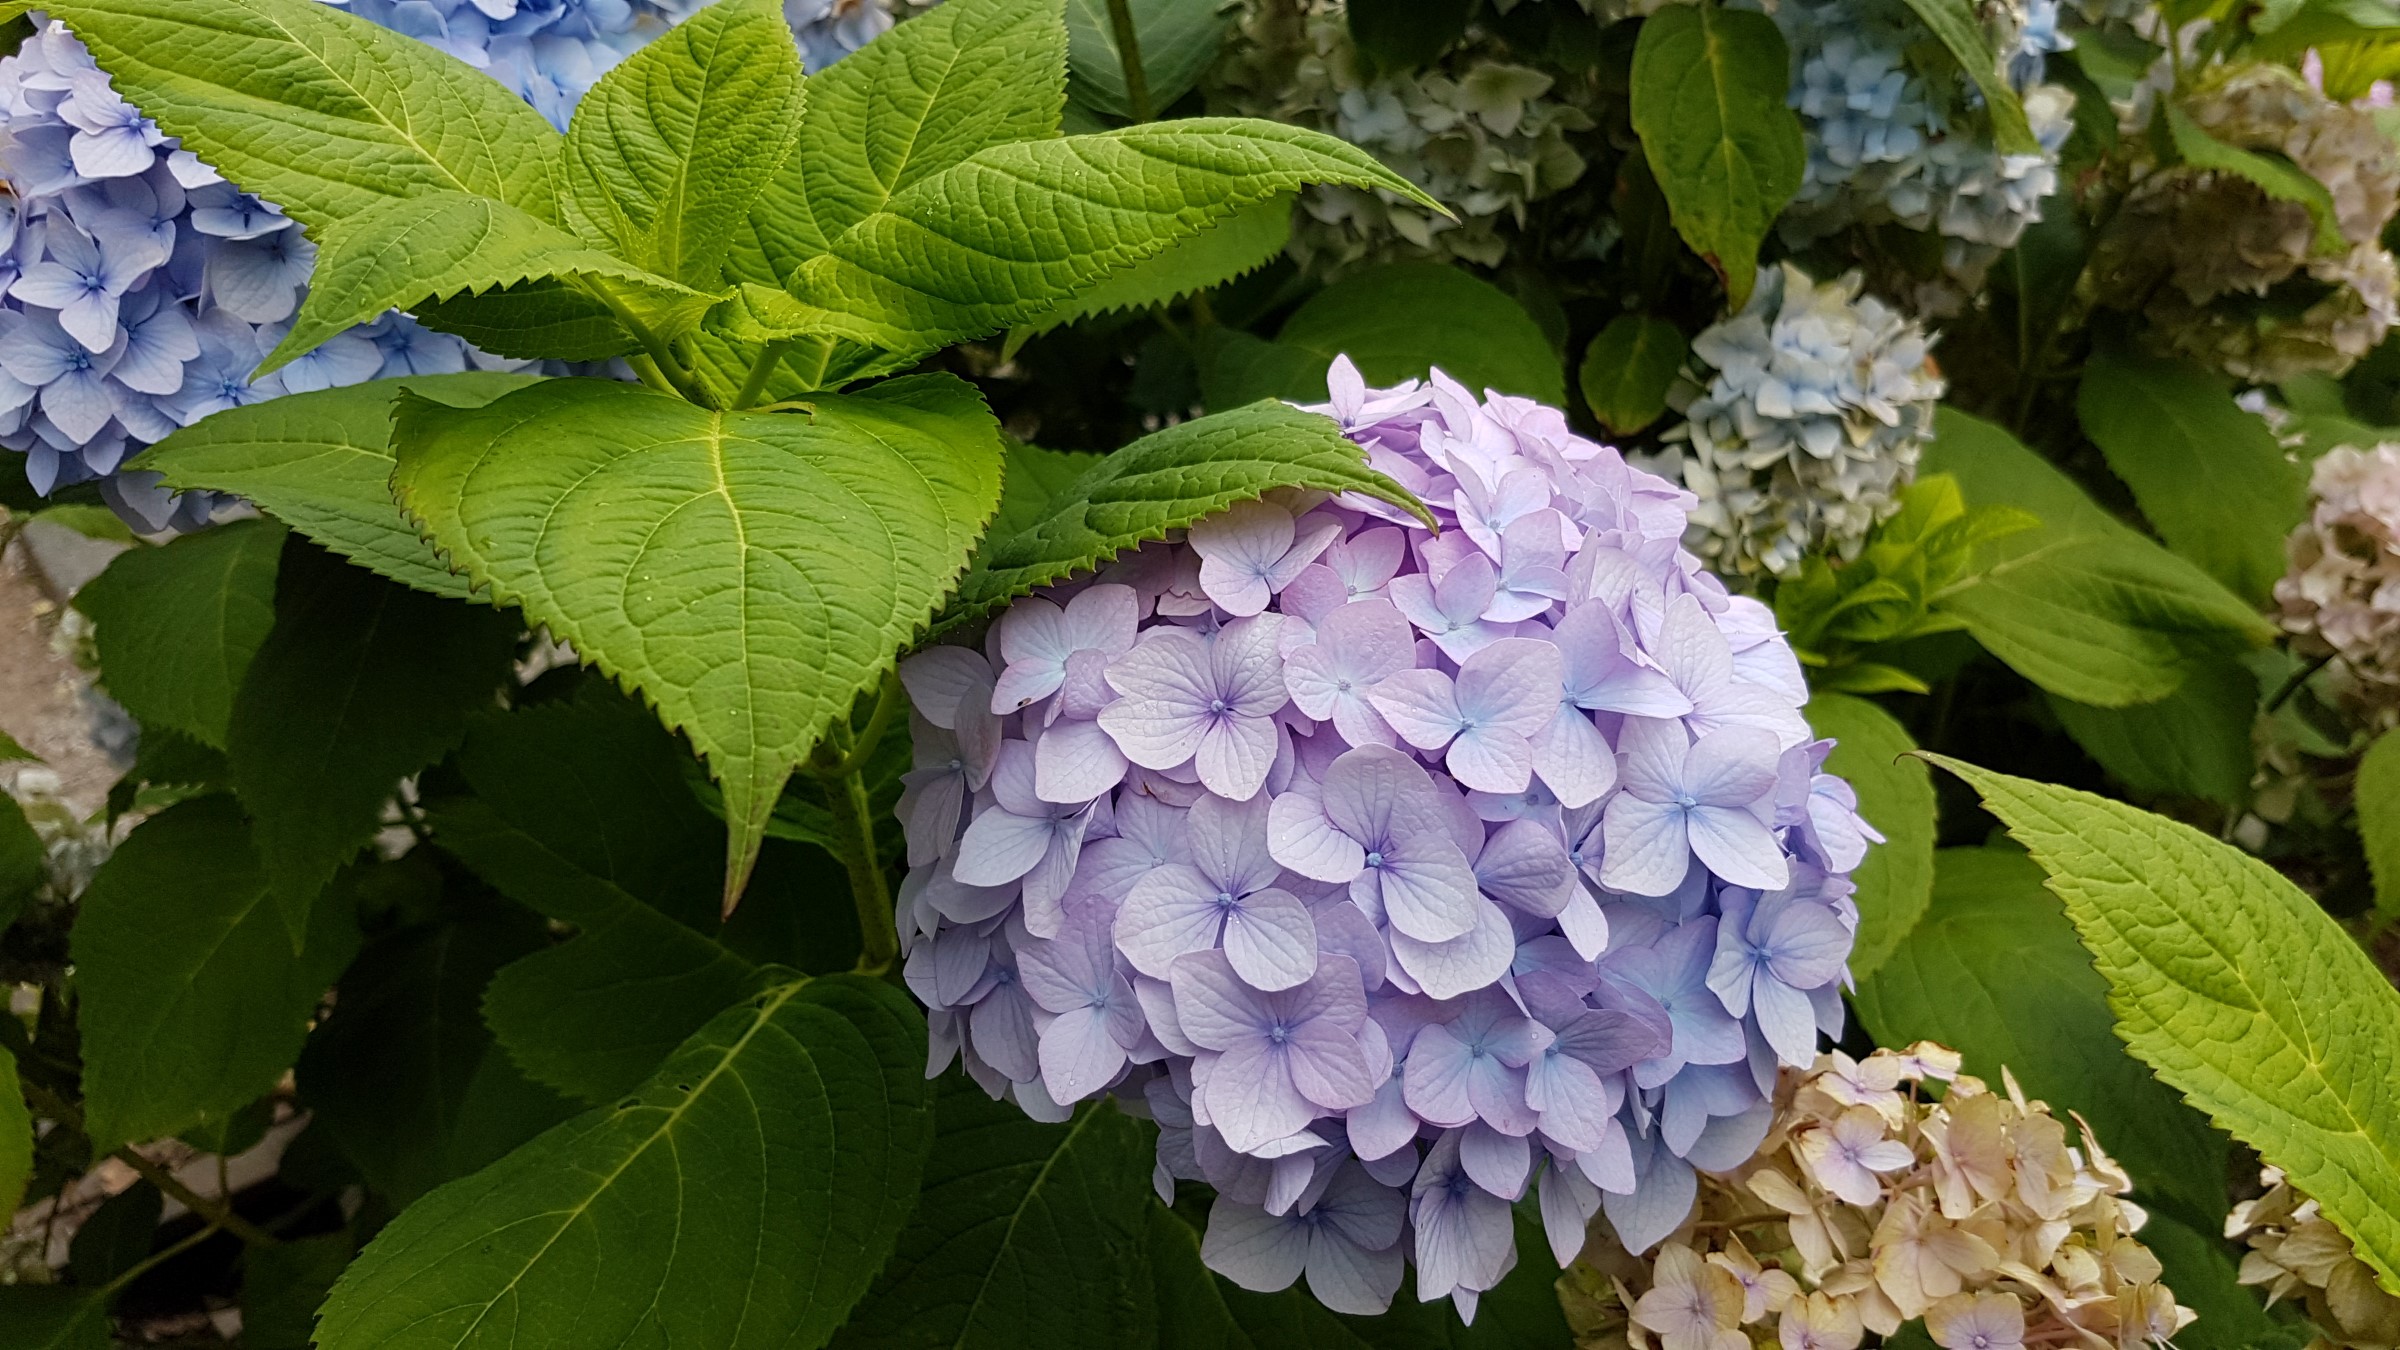 Hortensia i ei lys lilla farge, blome med avrunda, trekanta blader